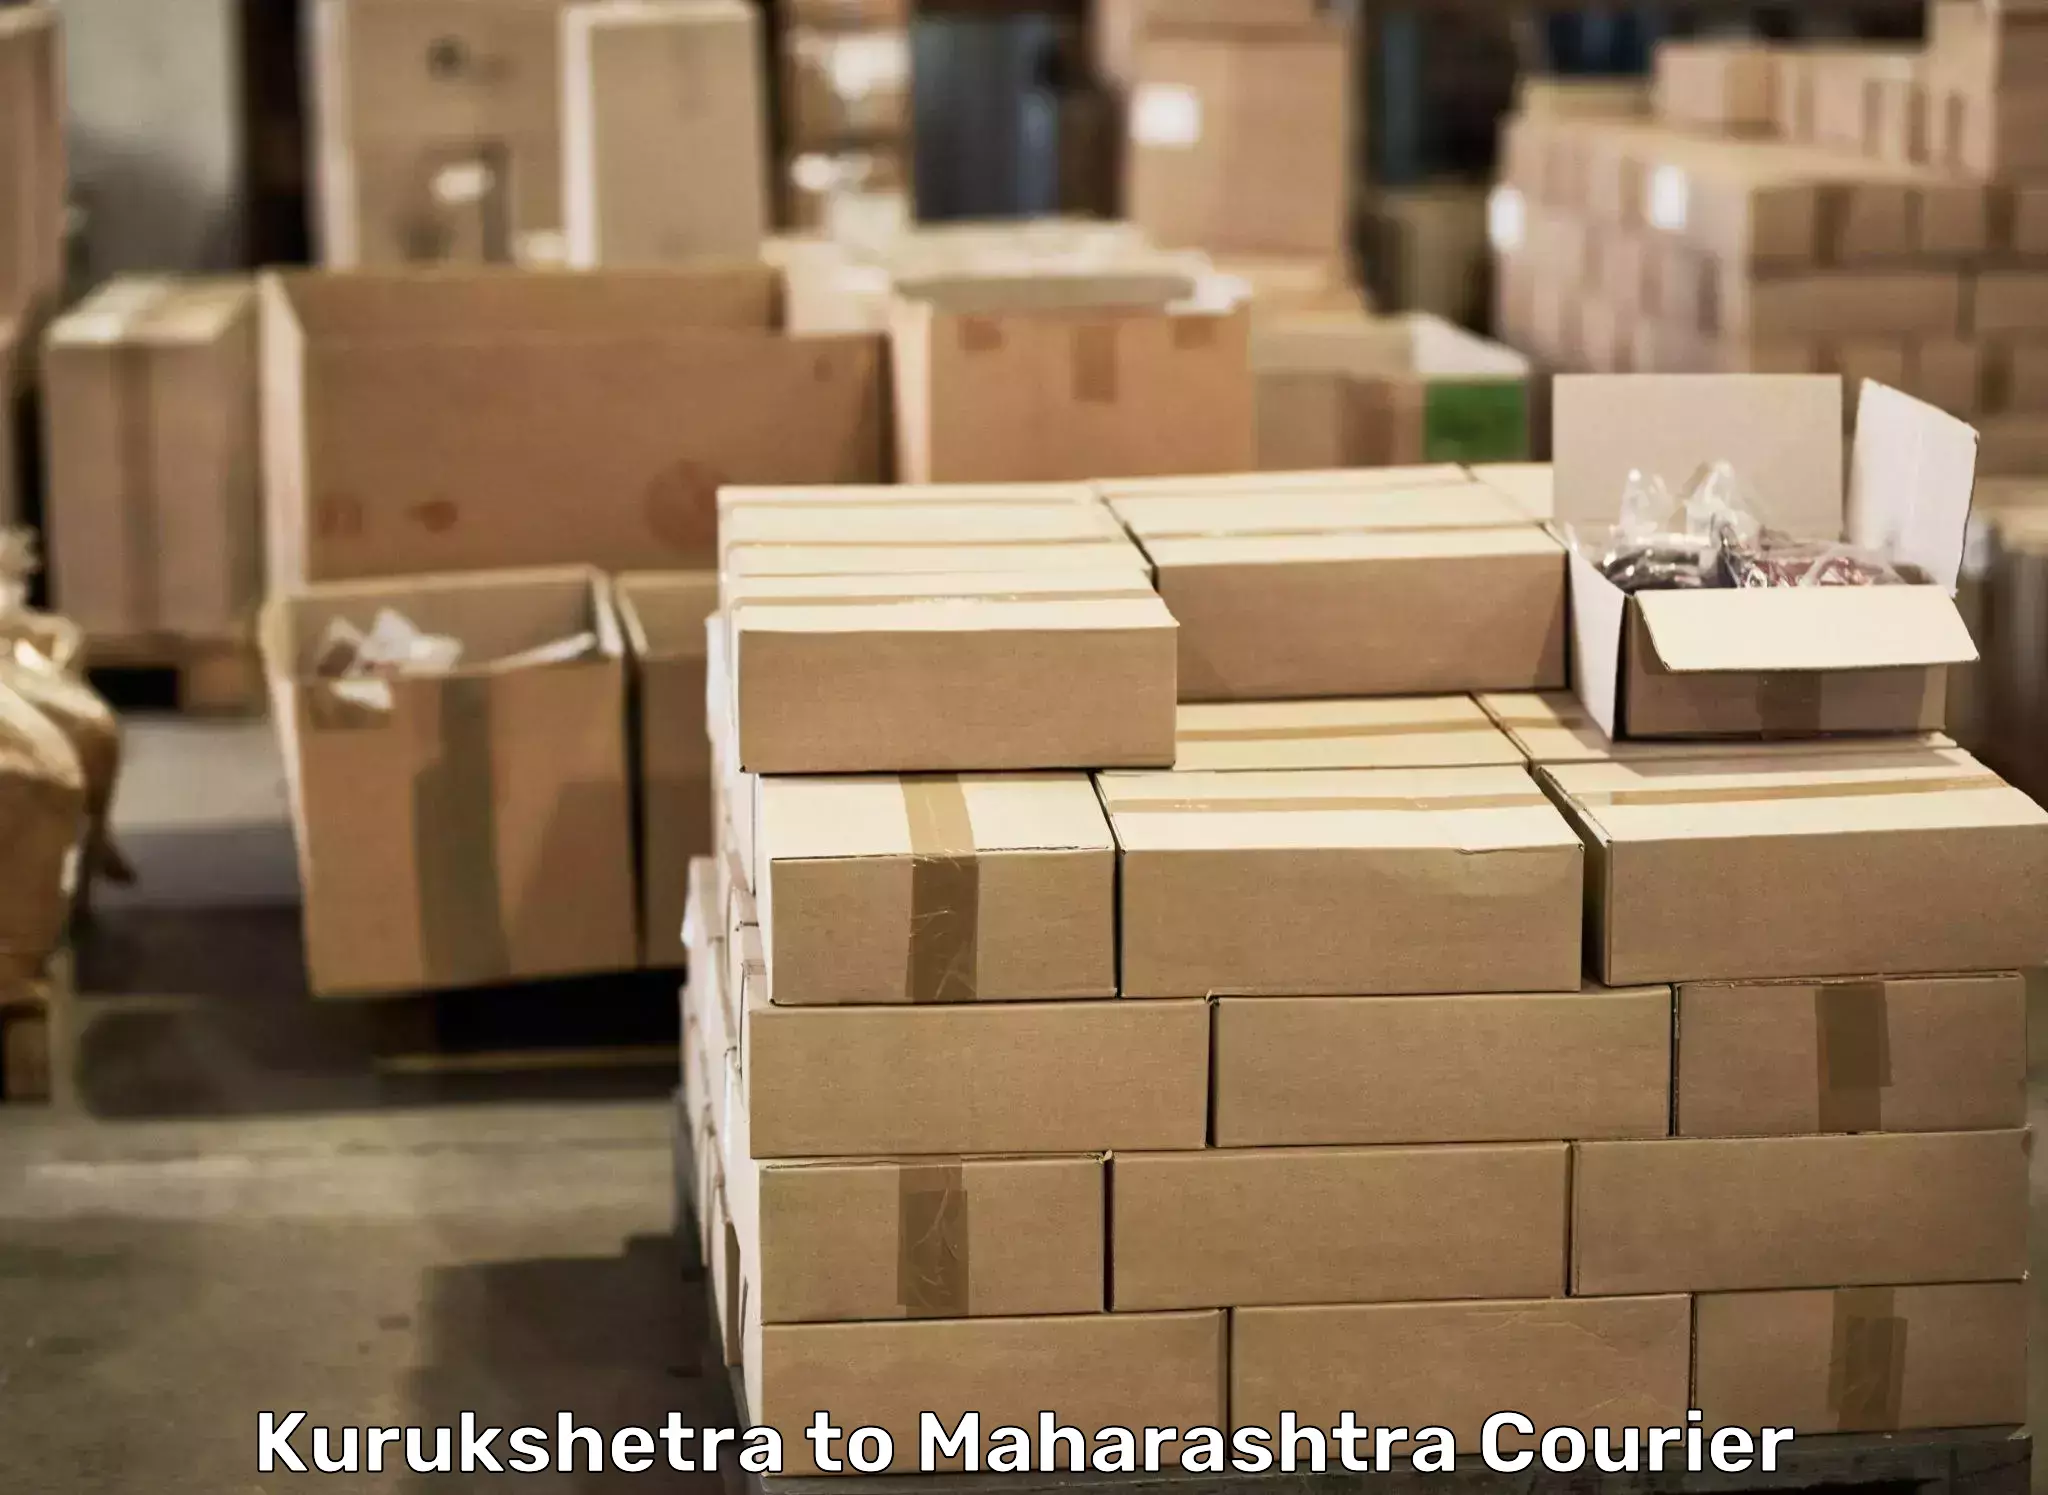 Efficient moving company Kurukshetra to Talegaon Dabhade